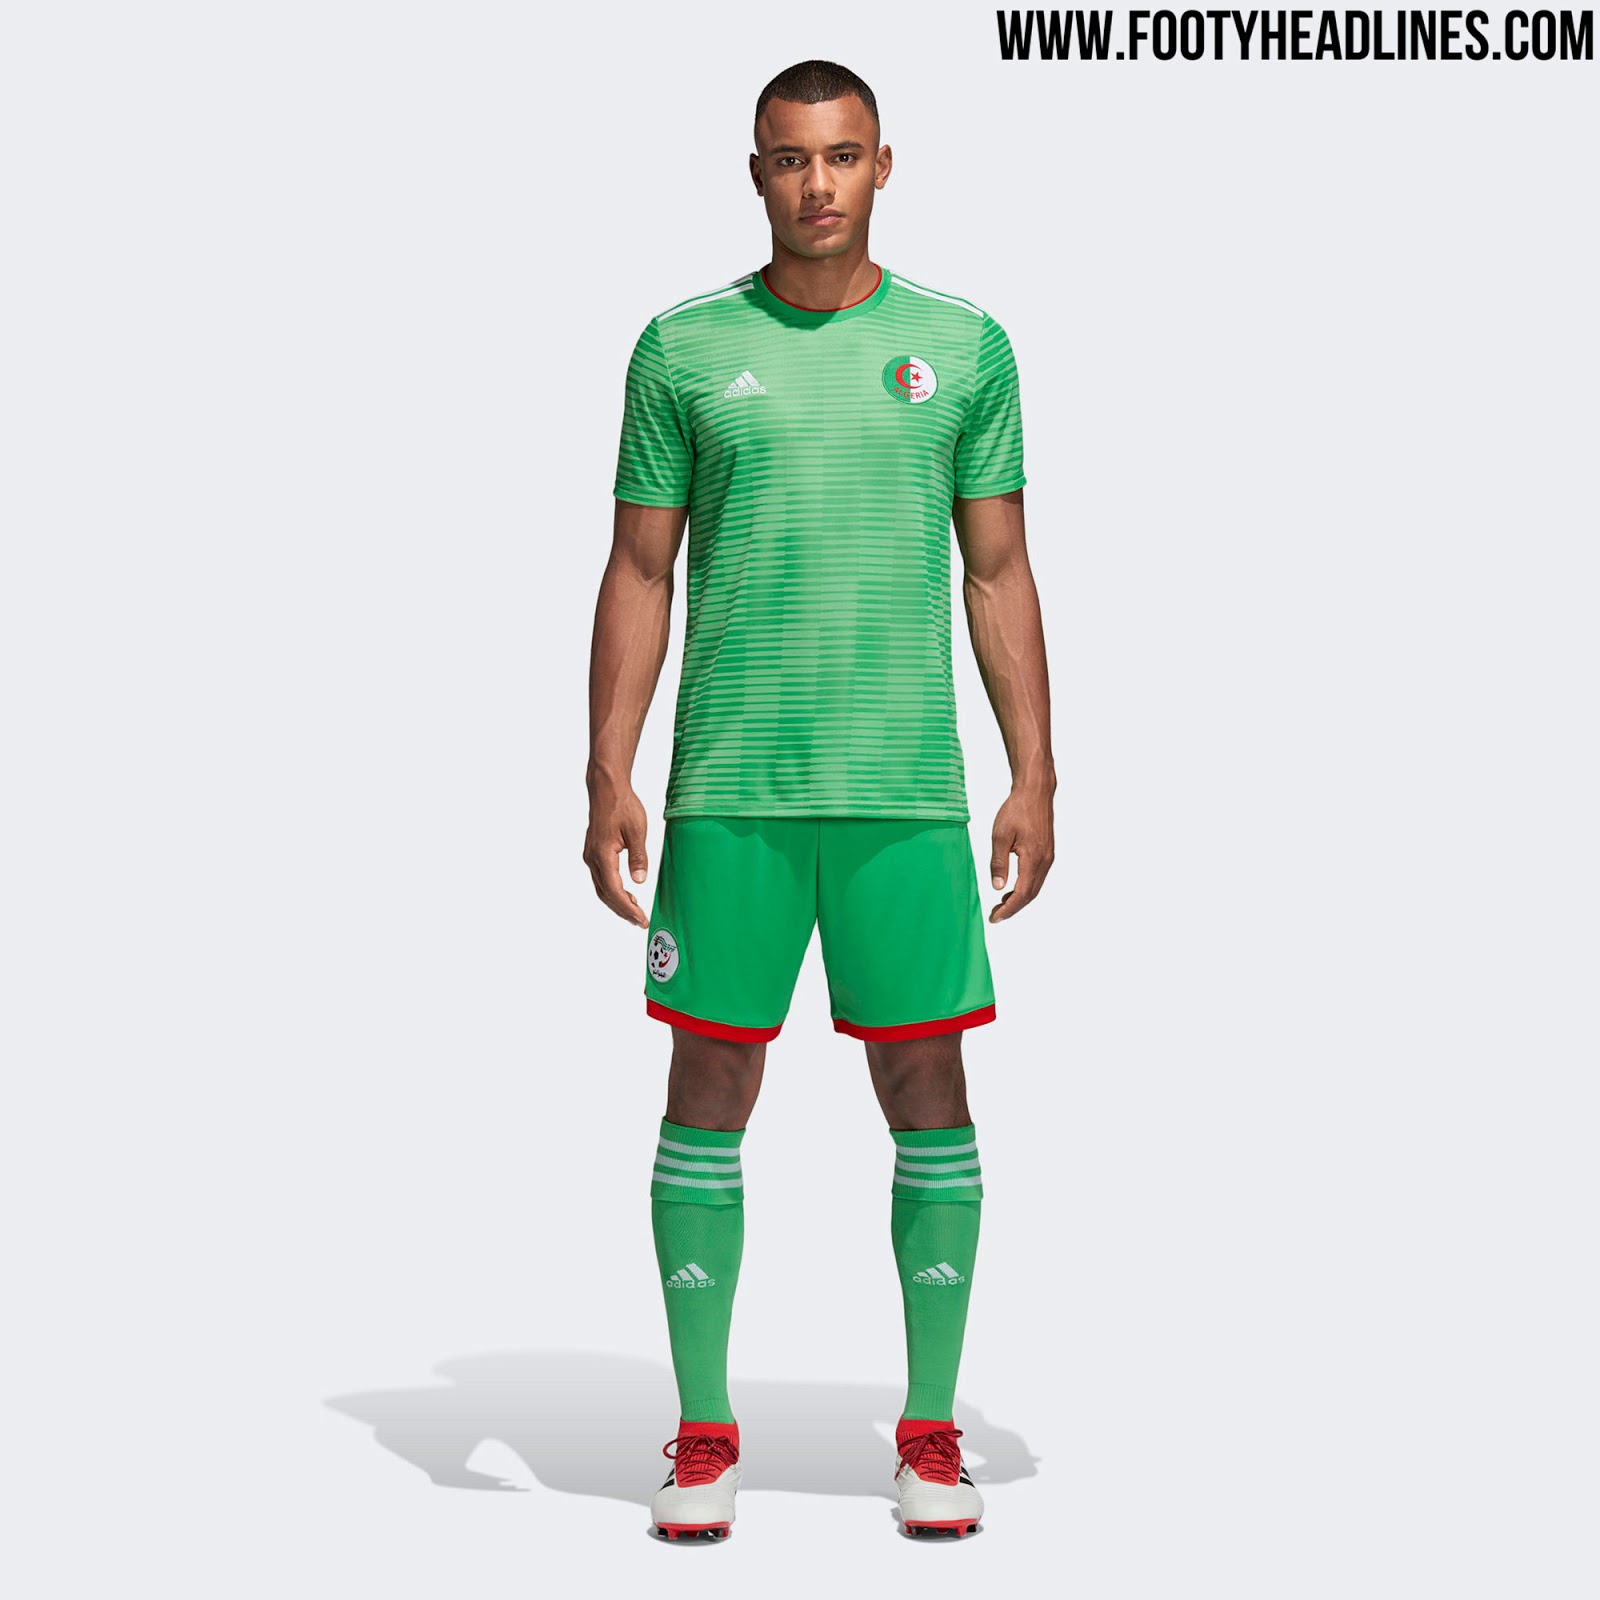 Adidas Algeria 2018 Home Kit Released + Away Kit Leaked - Footy Headlines